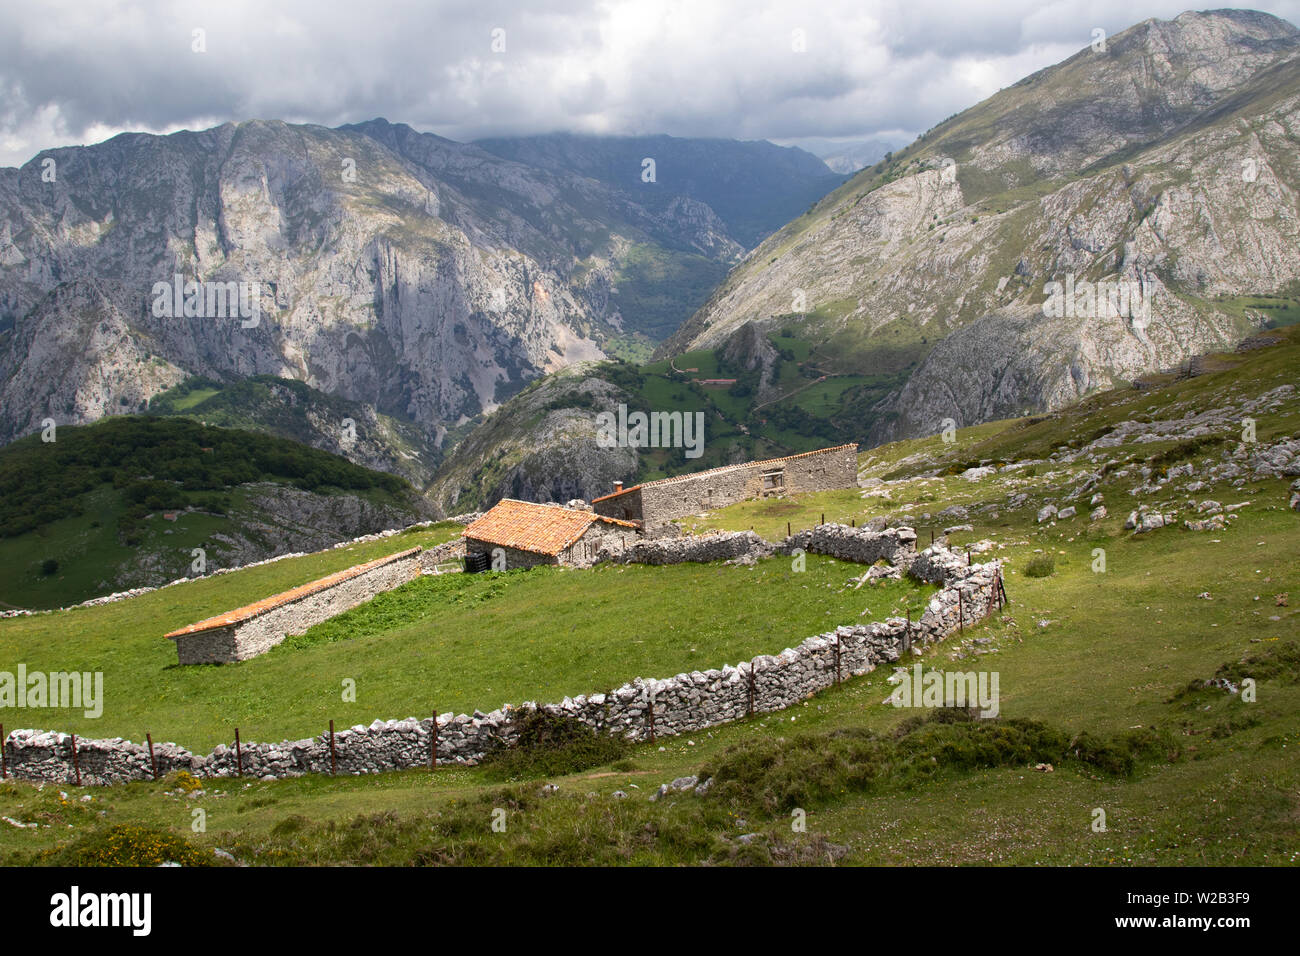 Edificios de granjas alpinas y muros de piedra seca en lo alto de la aldea de Bajes, Parque Nacional Picos de Europa, España Foto de stock